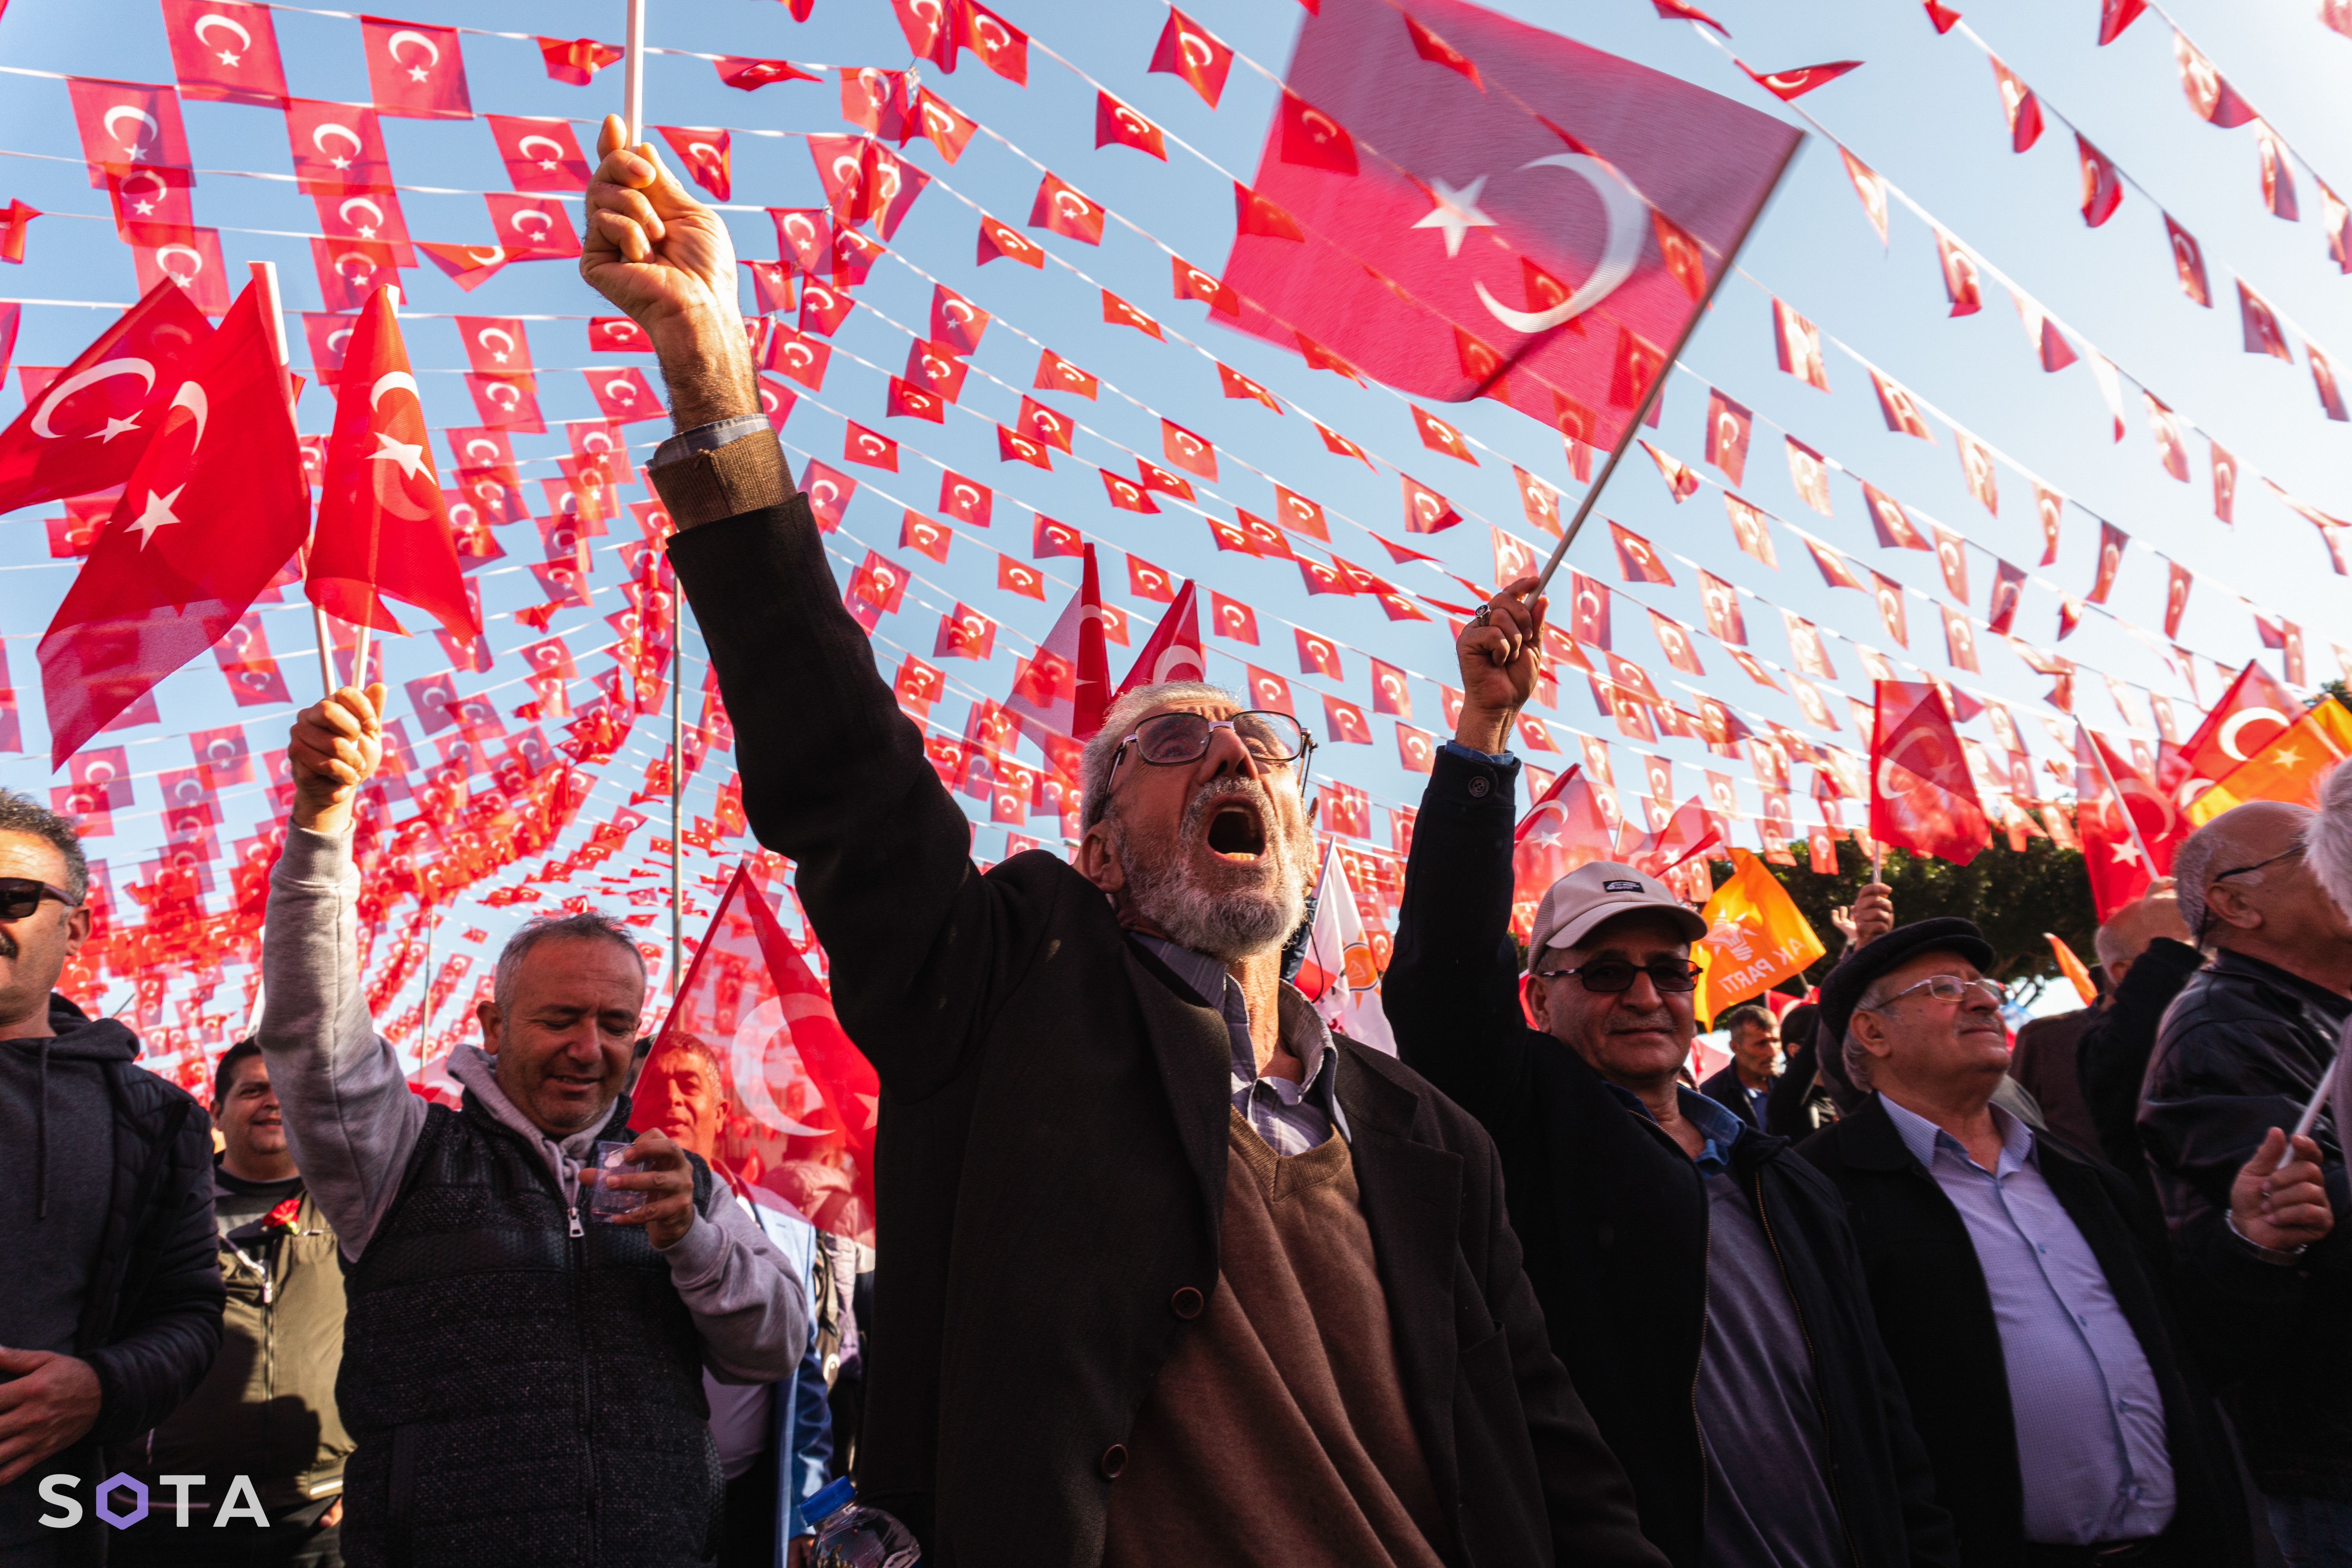 Предыборный митинг Реджепа Эрдогана в Стамбуле
Эмин Джафаров / SOTA